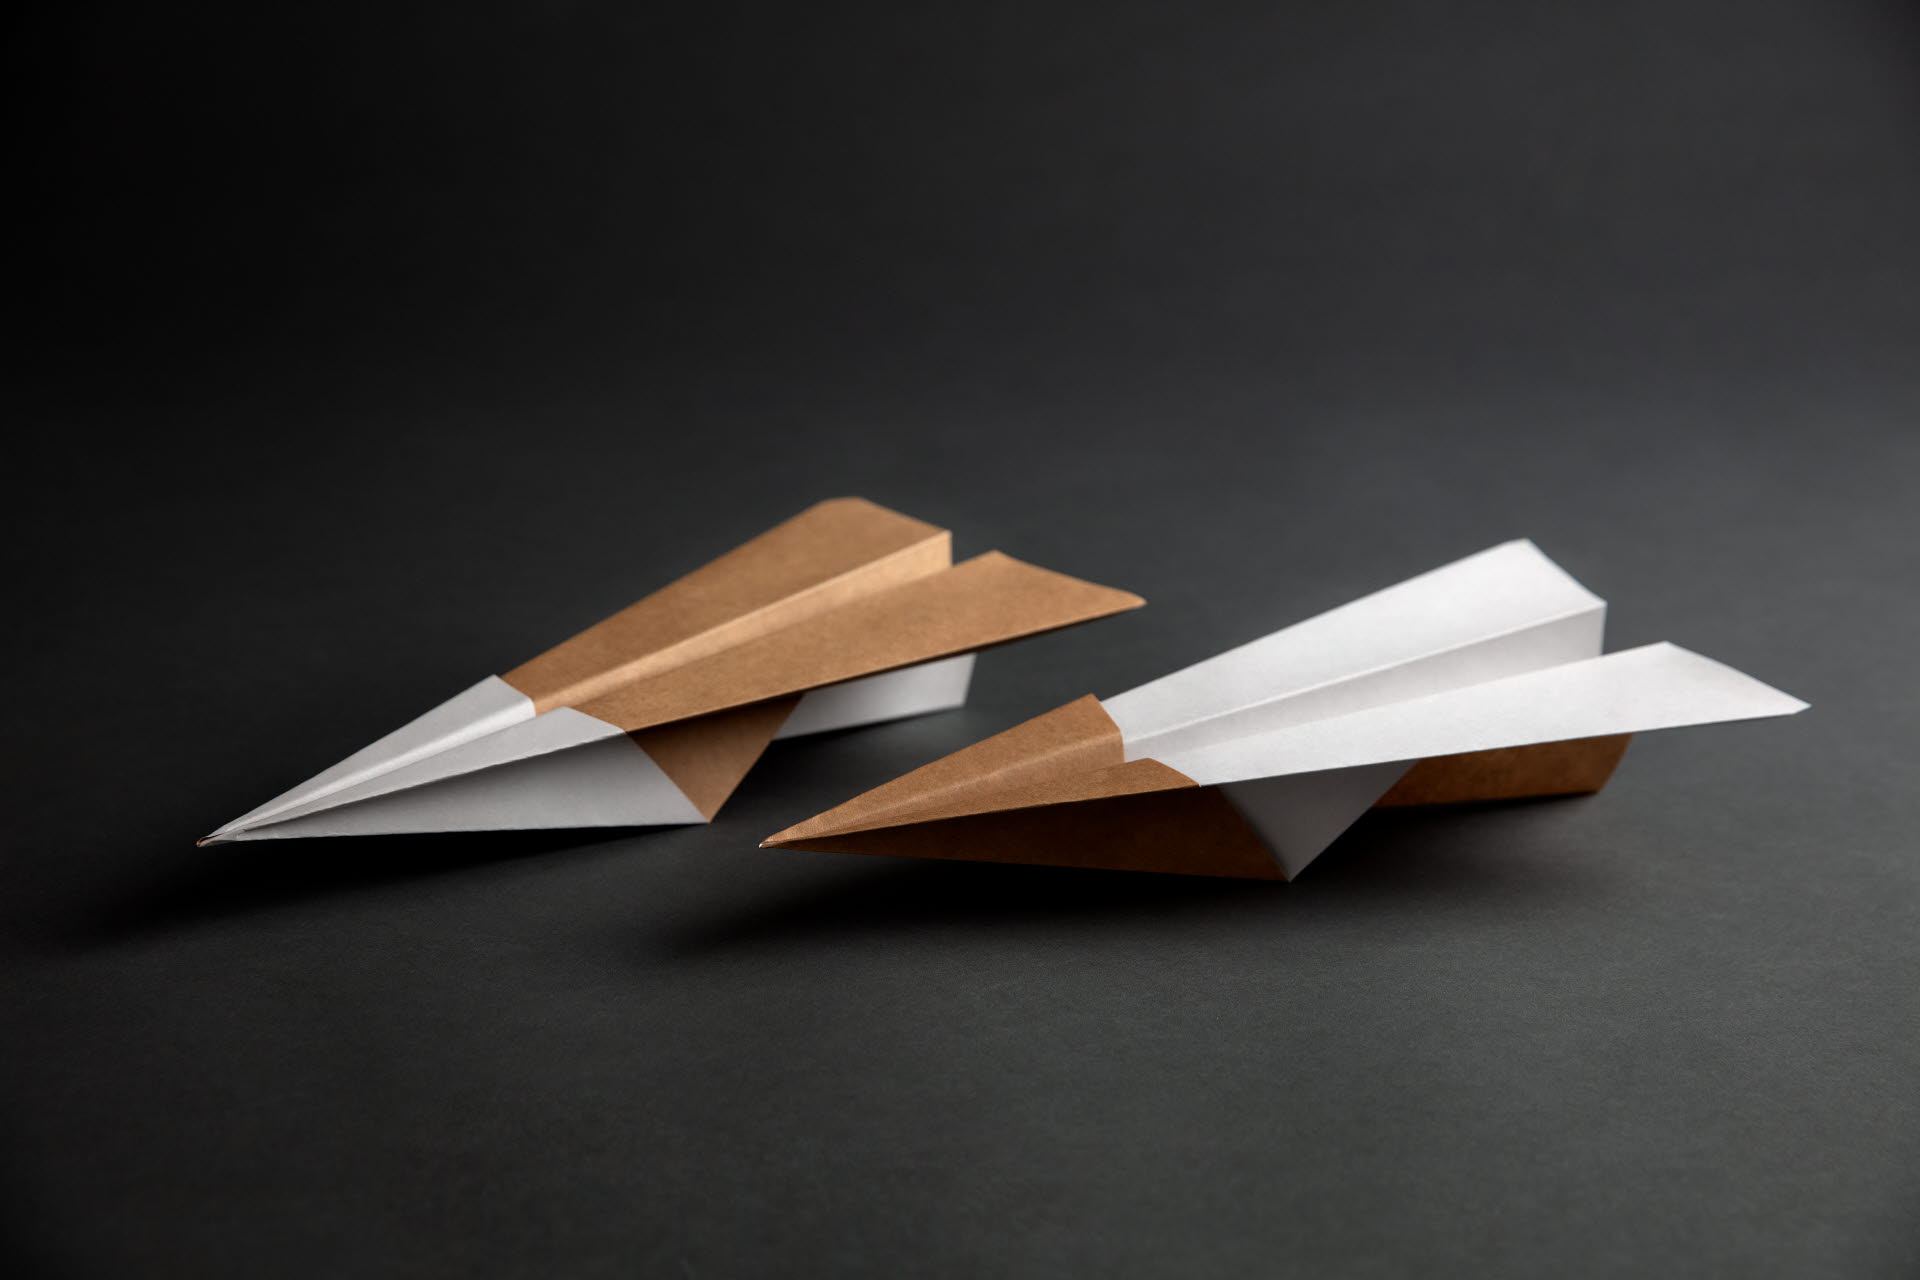 Paper planes made of Kraftliner